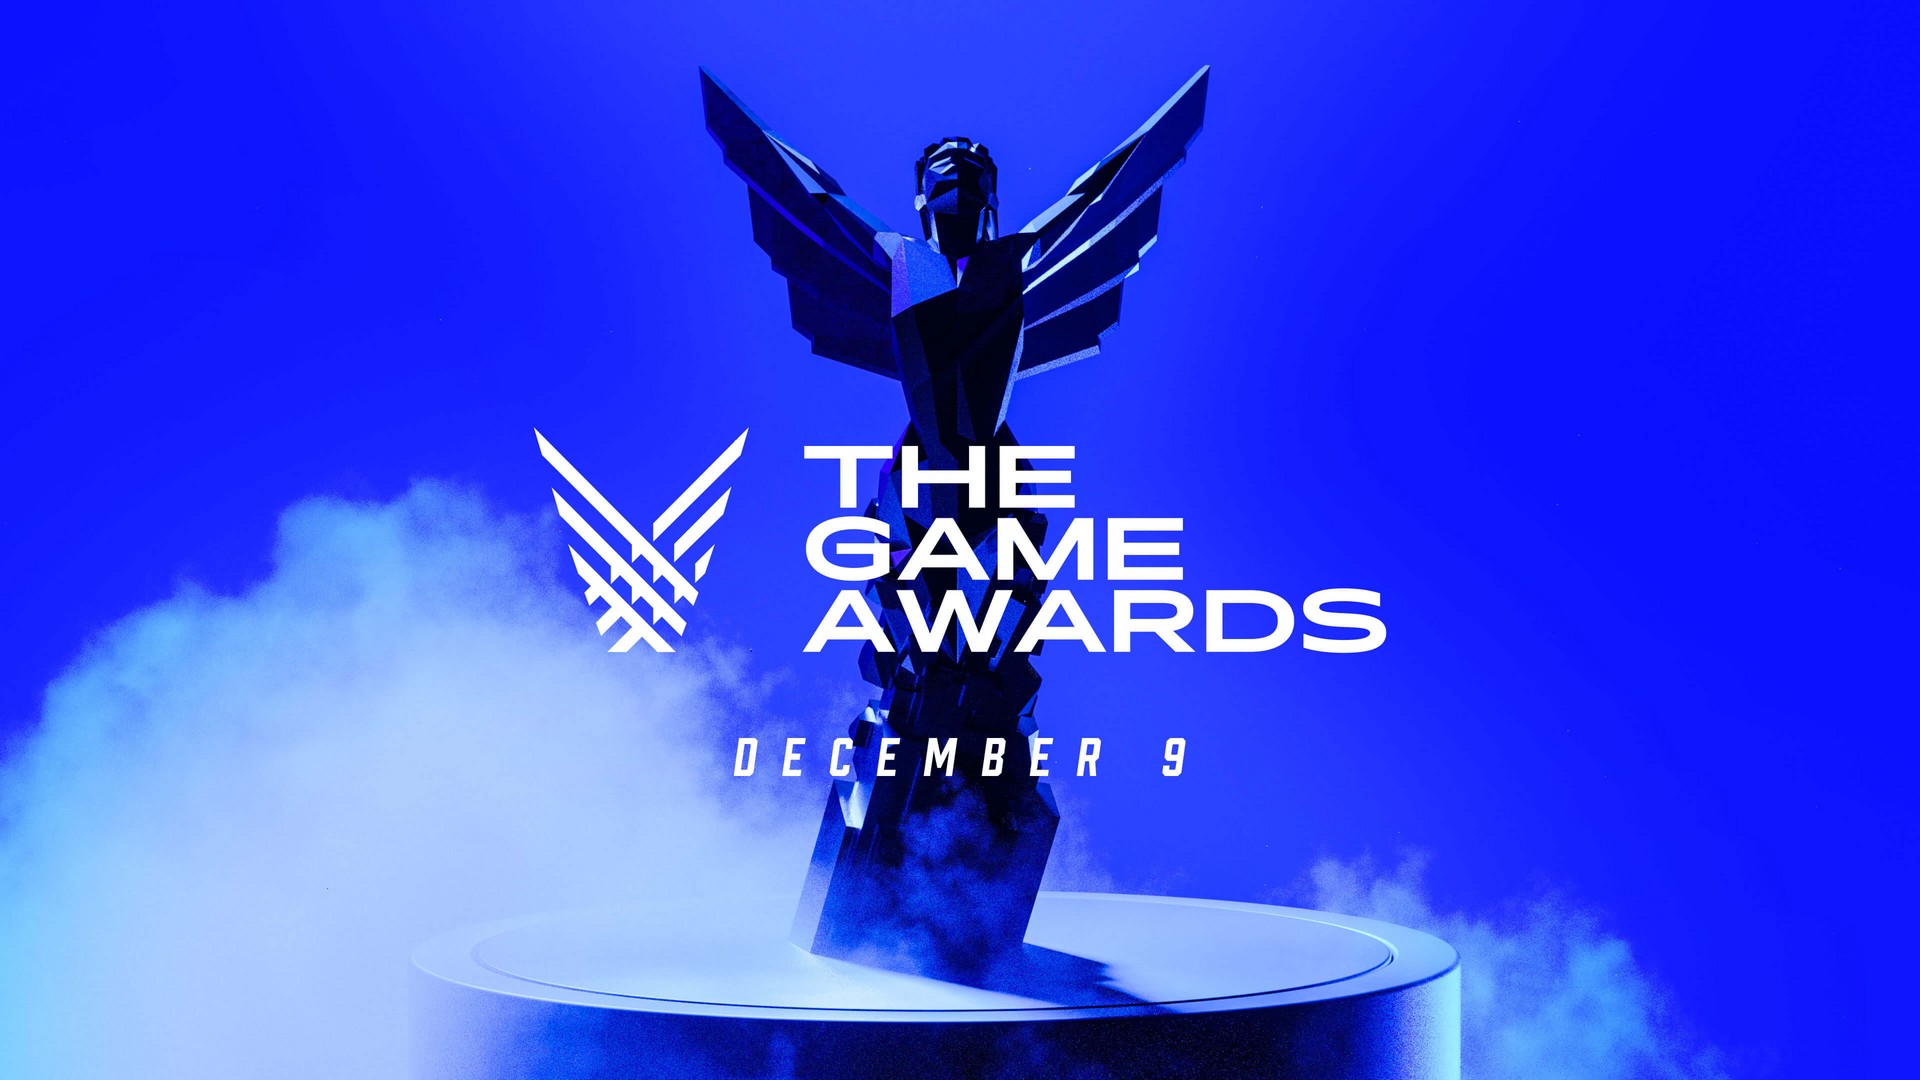 Jogo do Ano: Prêmio Melhores do Ano TechTudo elege game destaque de 2020